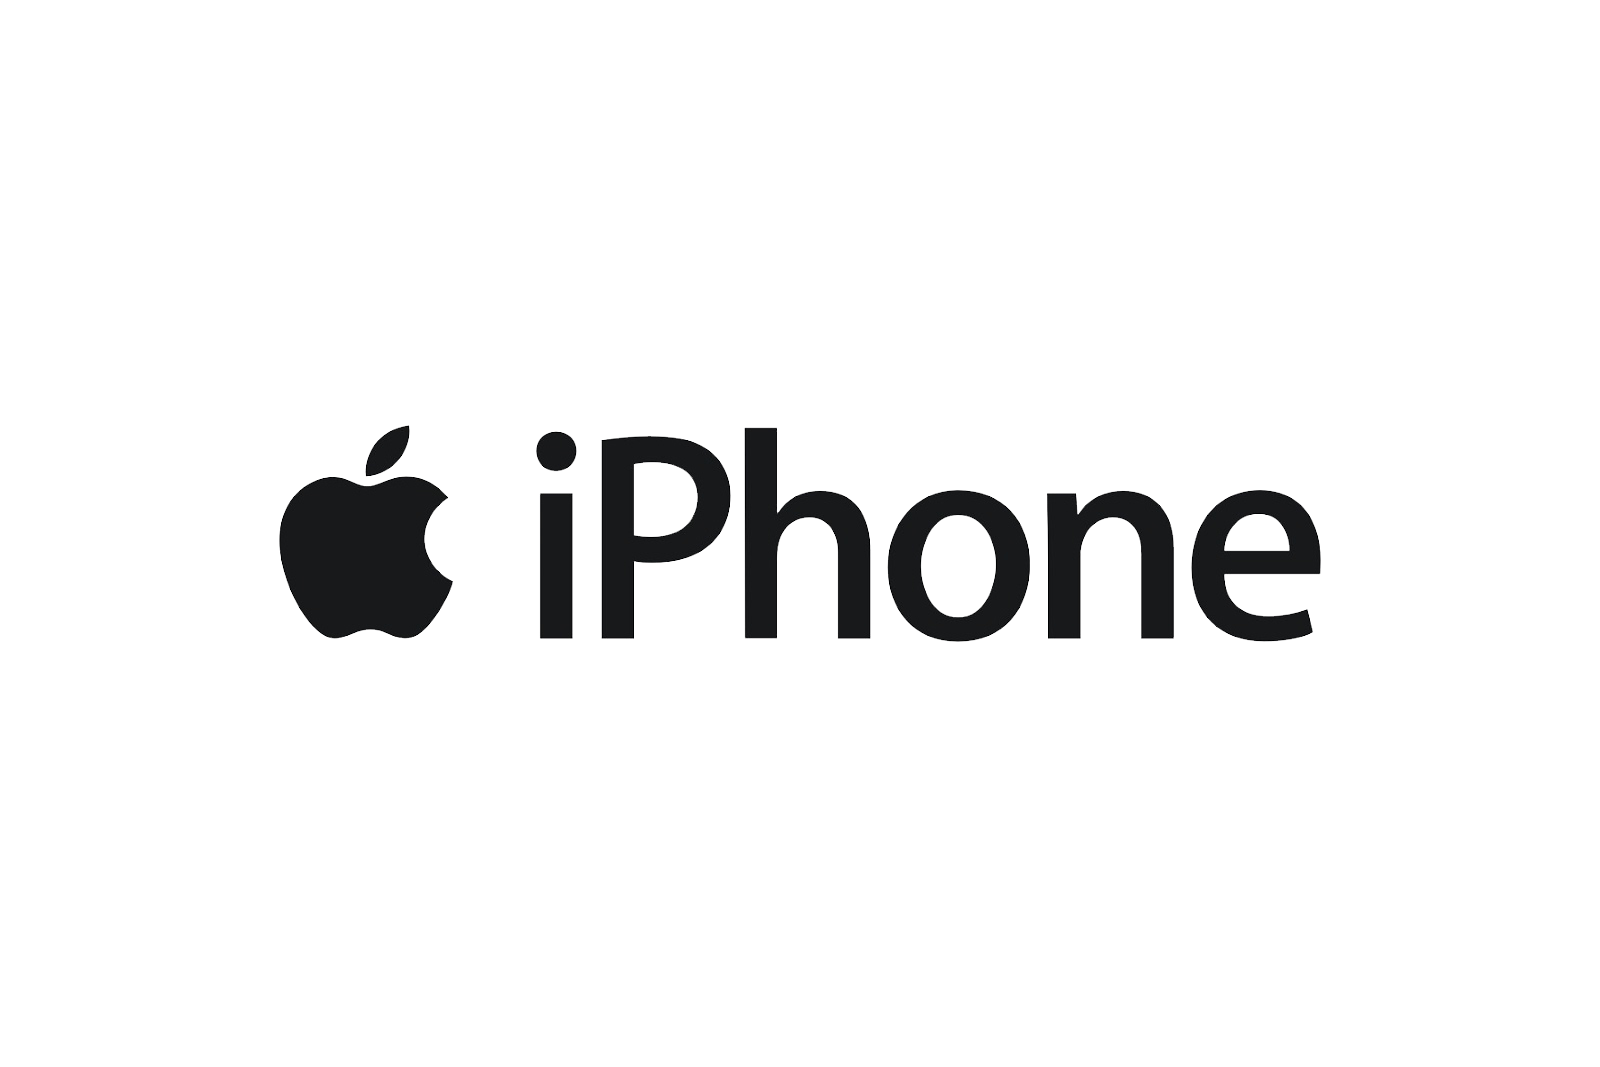 iOS14 backtap on iPhone